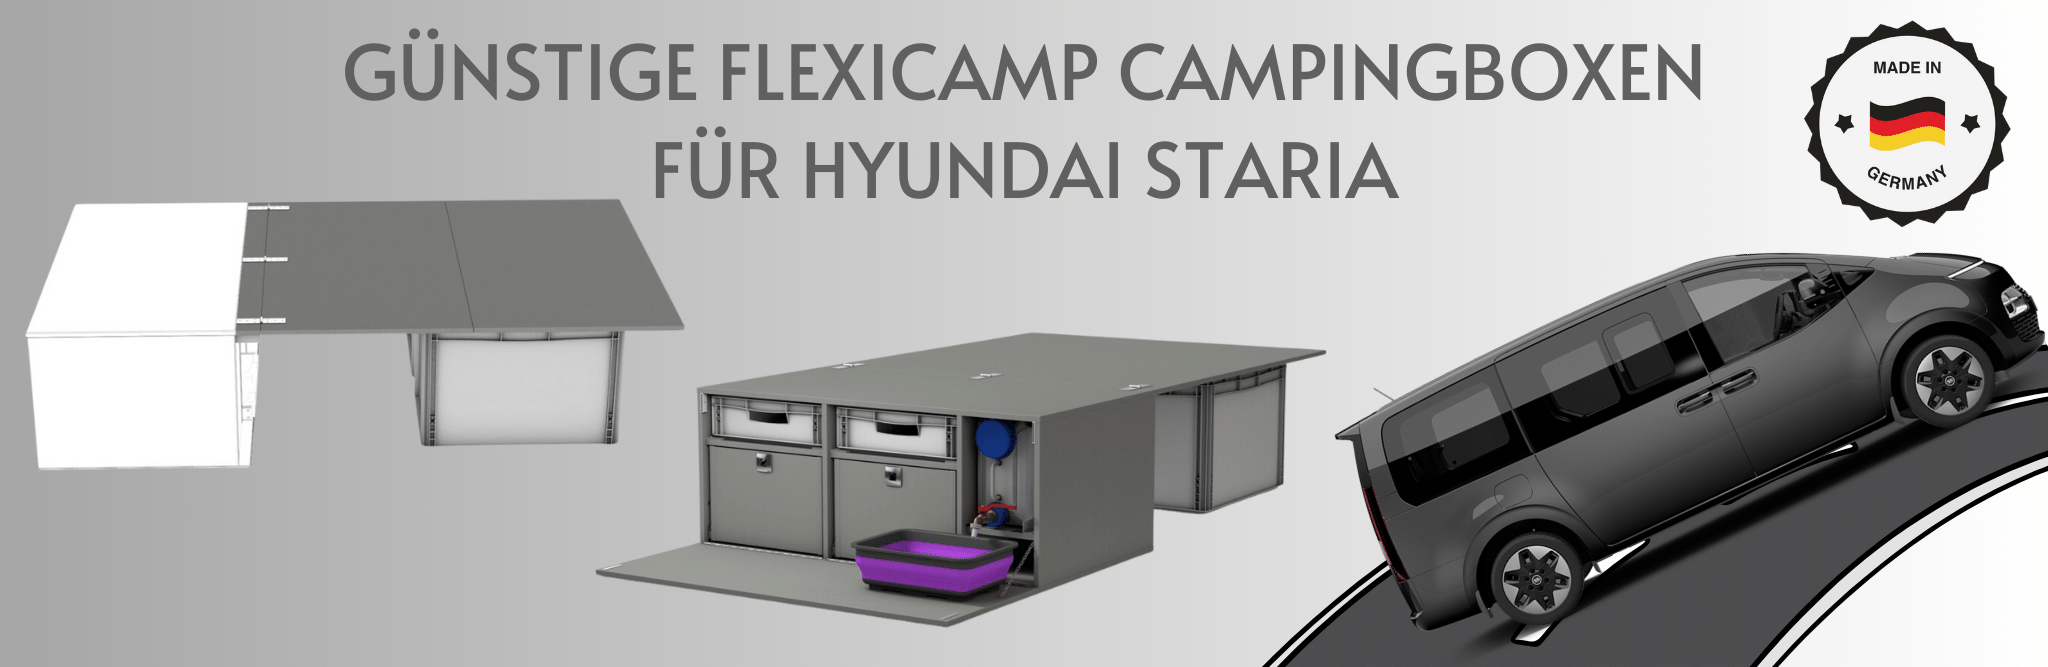 Flexicamp Campingboxen für Hyundai Staria